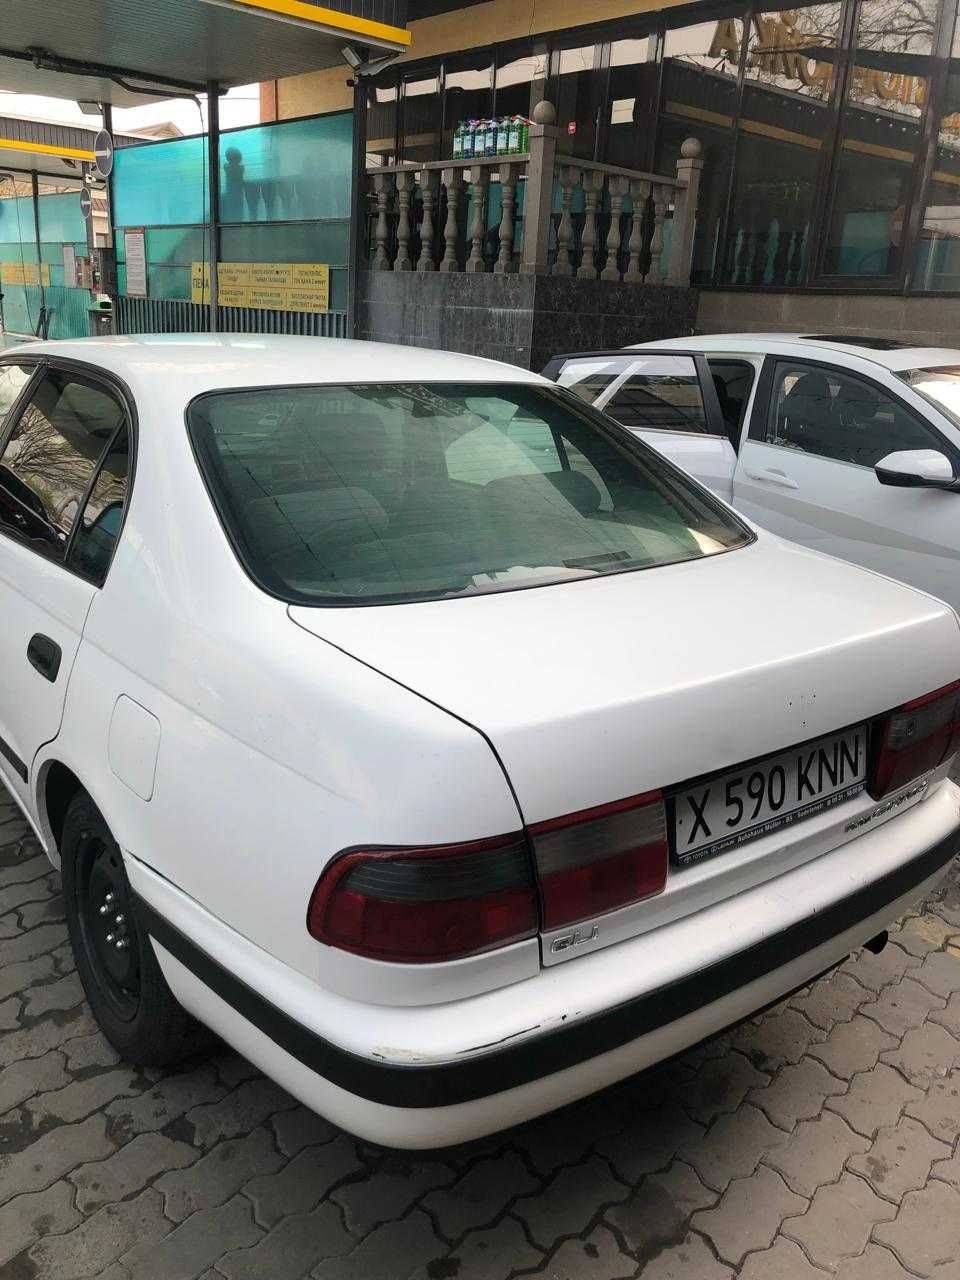 Продам Toyota Carina E, 1994 г., в хорошем состоянии, на ходу.